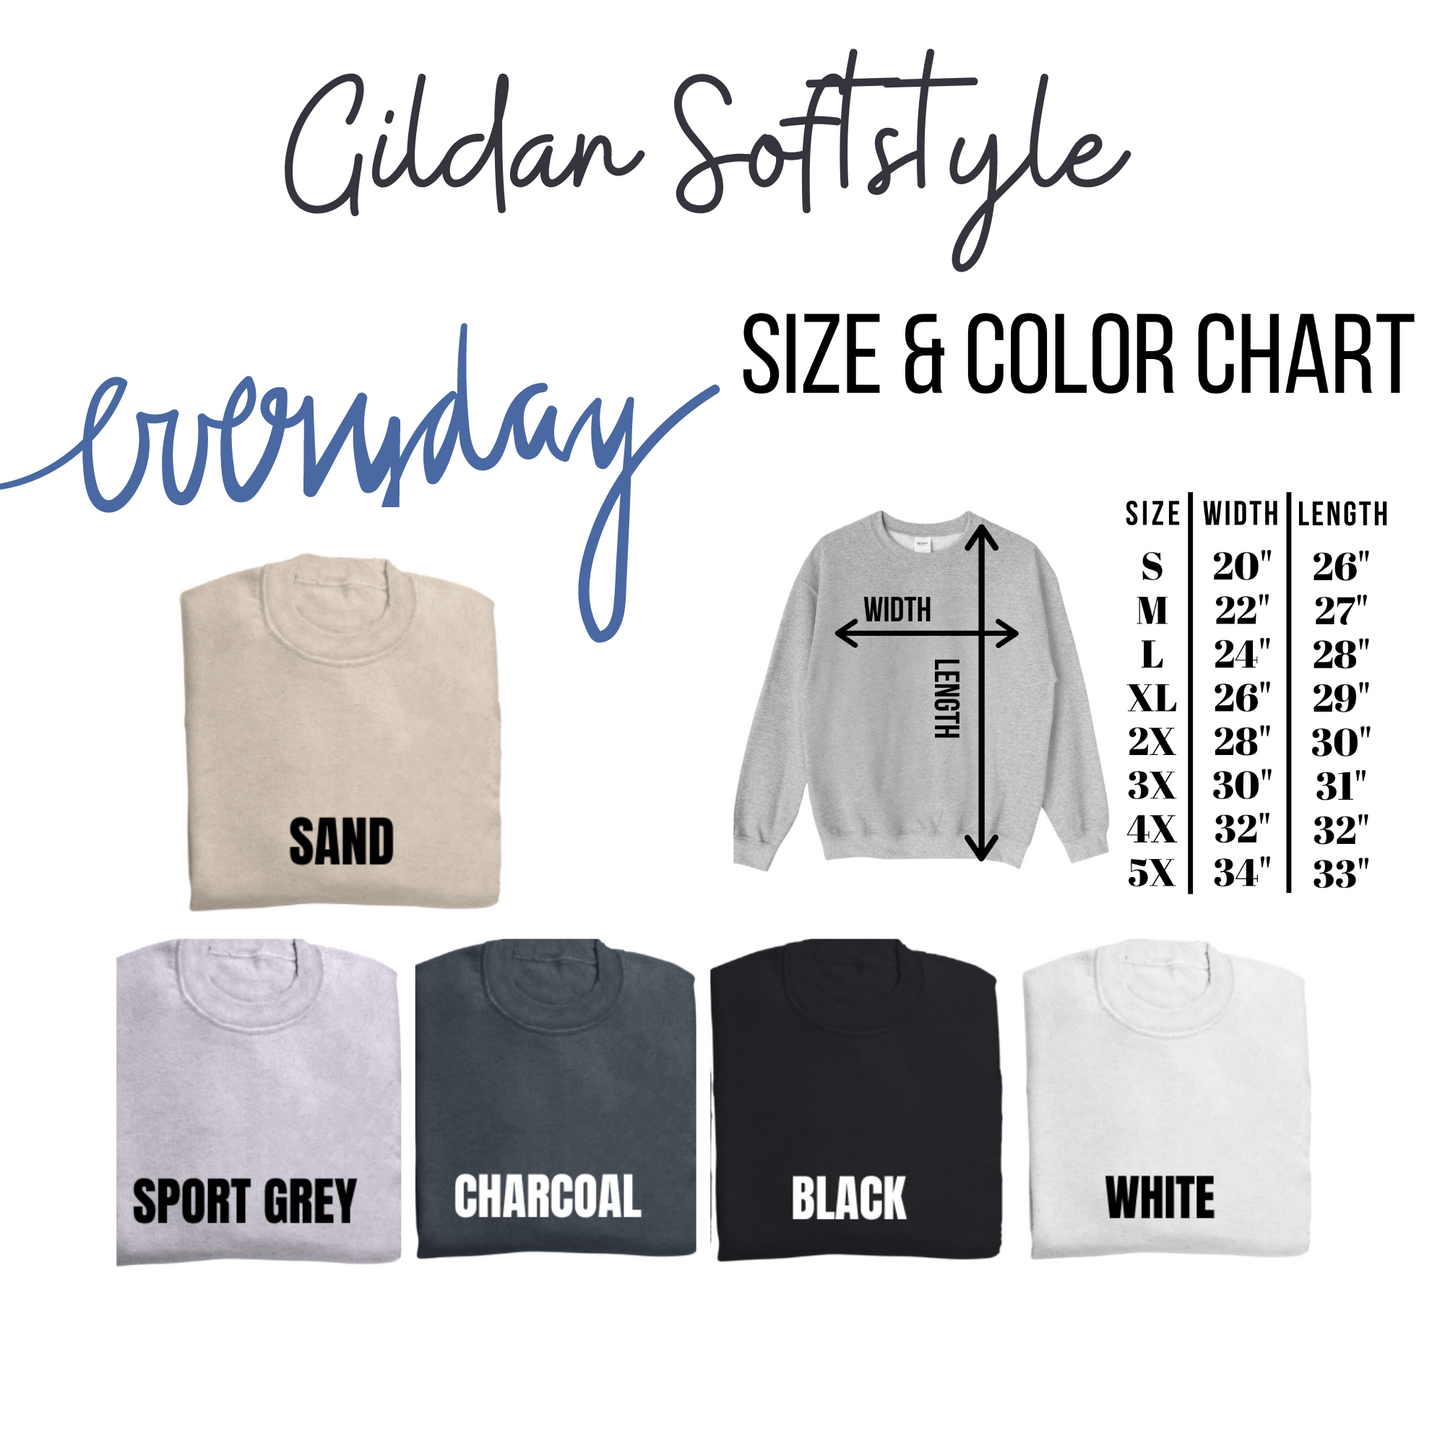 Lucky Stacked Gildan Softstyle Tshirt or Sweatshirt